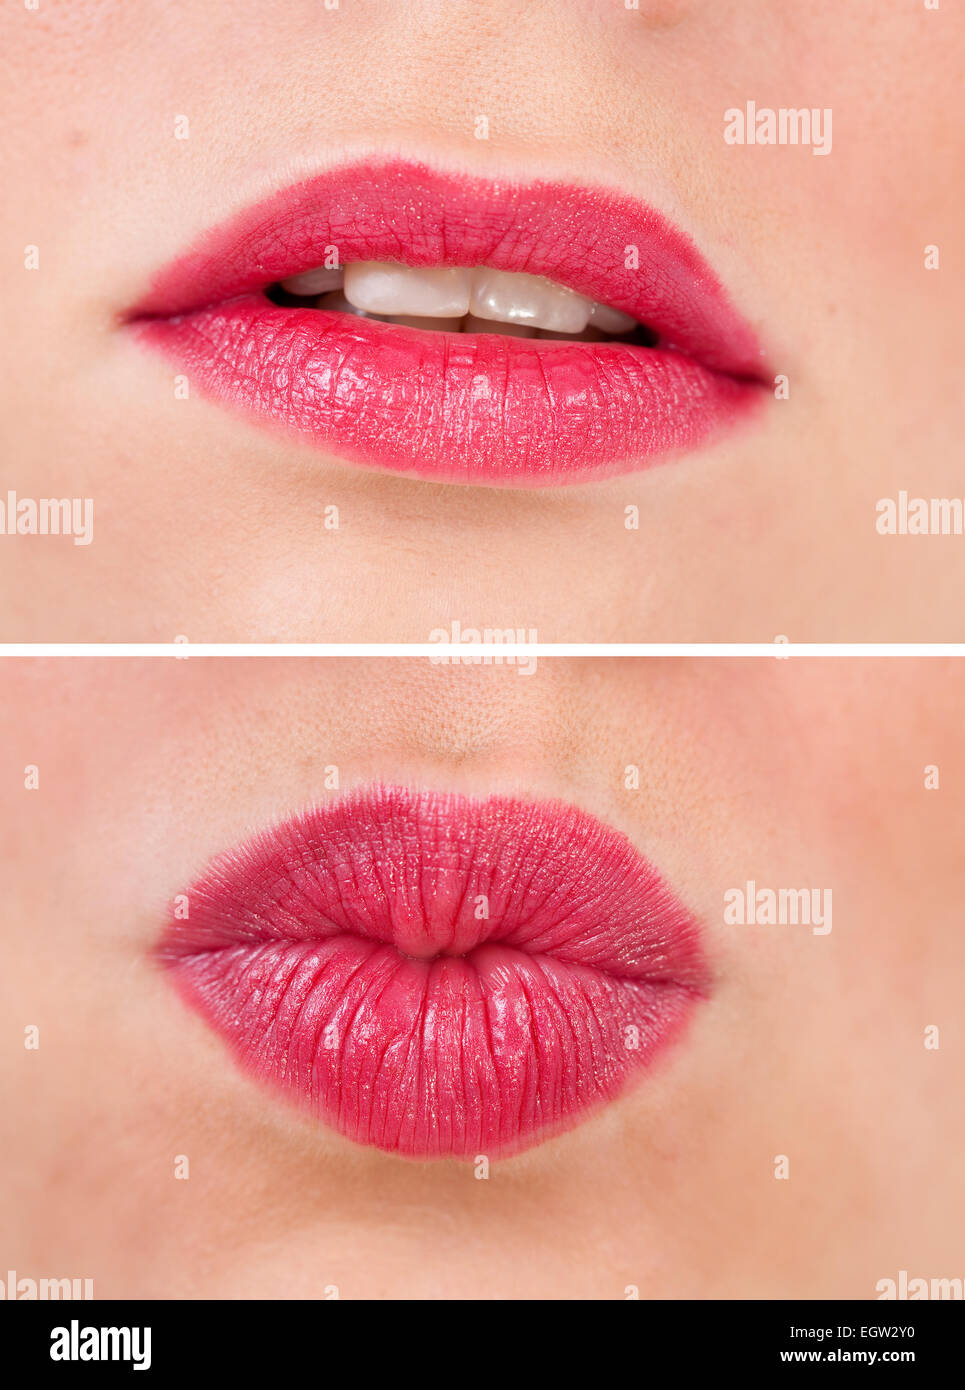 zwei Fotos von roten Mund von jungen Frauen Stockfoto